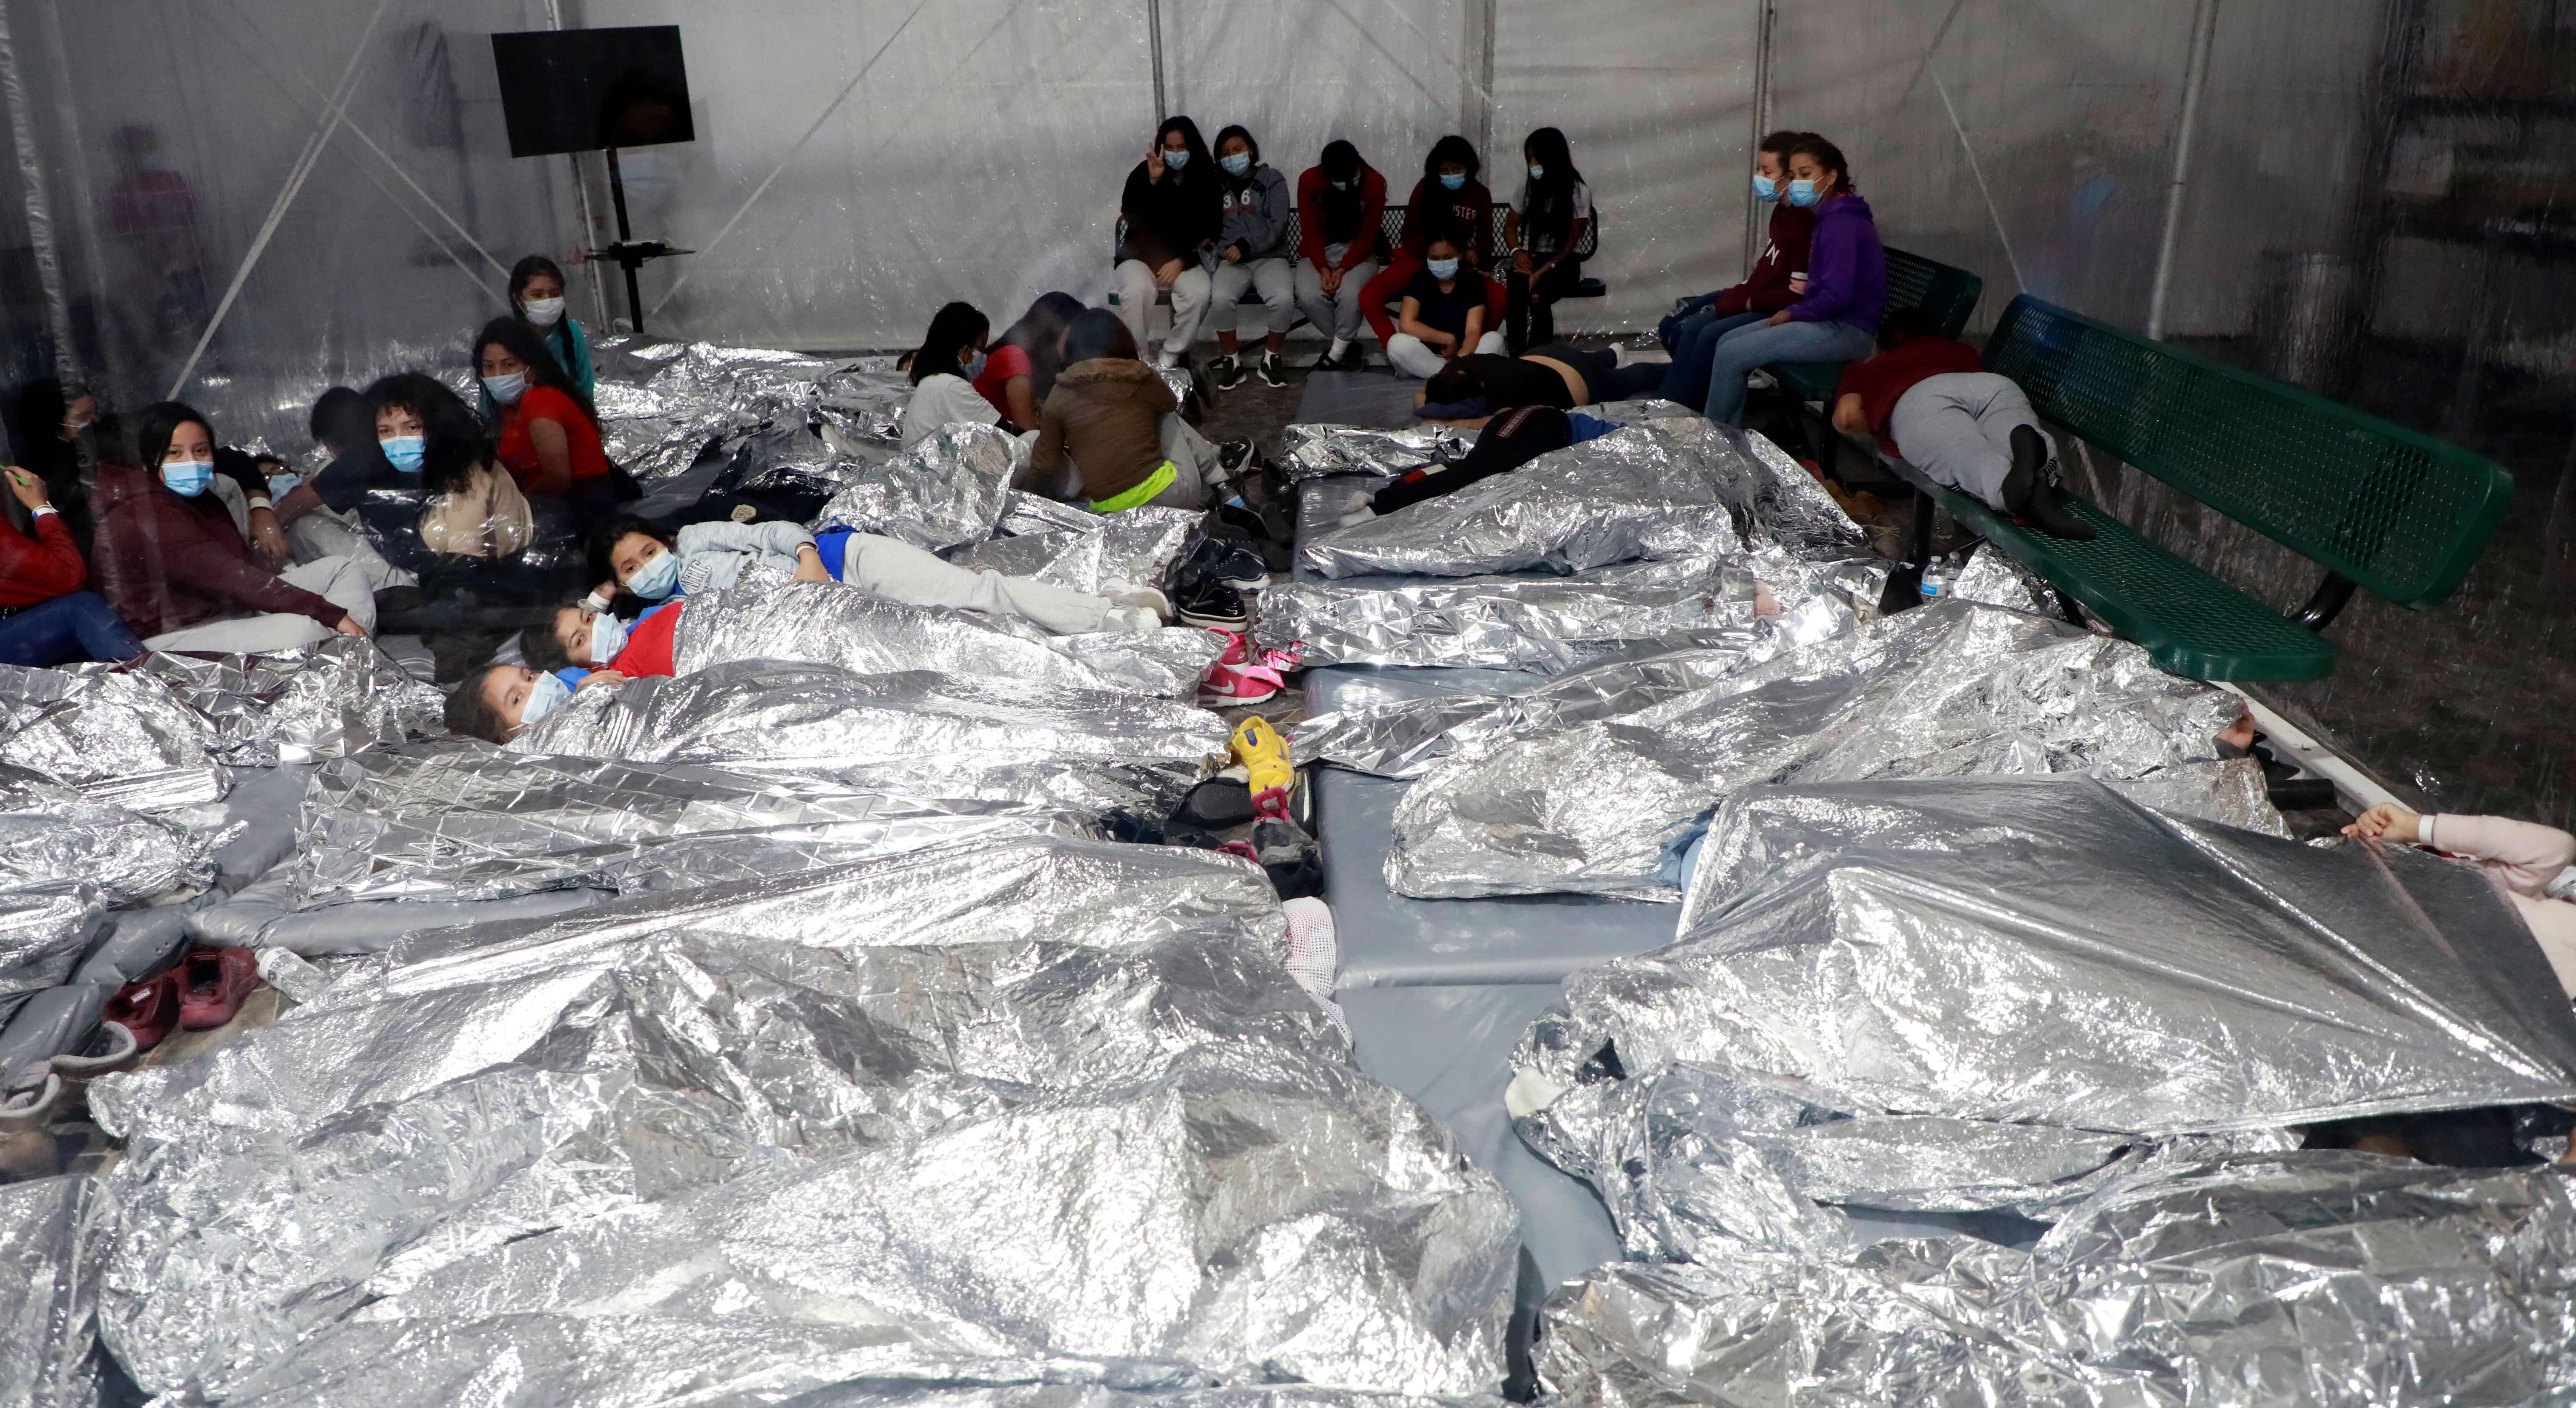 Una de las actuales crisis en la frontera entre México y Estados Unidos es el de los menores que viajan sin compañía adulta (Foto: Cortesía CBP vía Reuters)